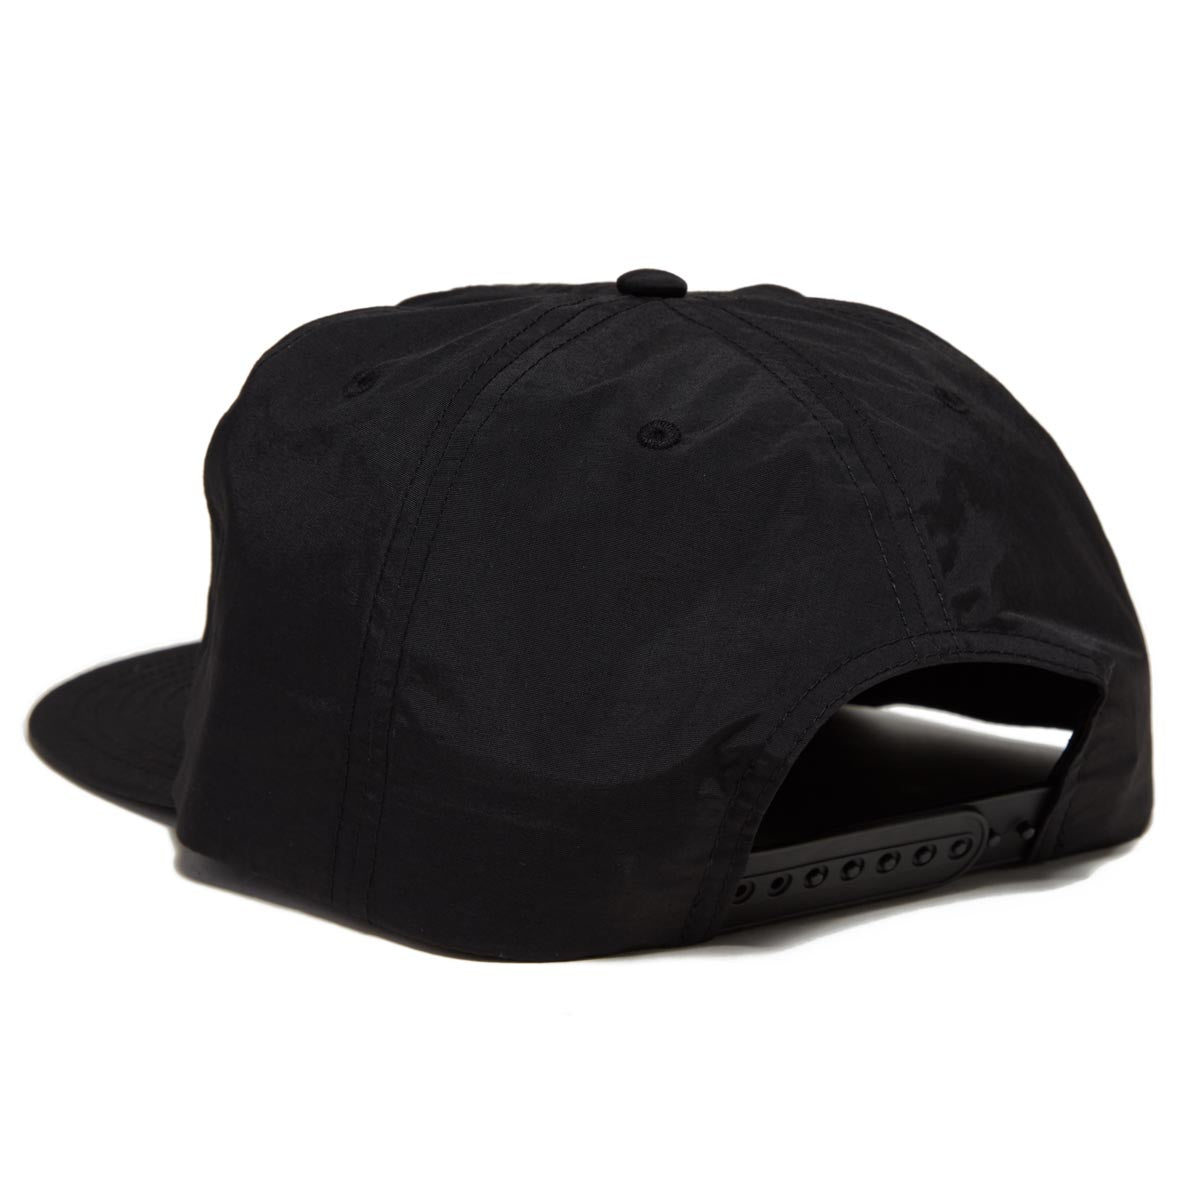 AVVA Dry Dock Nylon Surf Hat - Black image 2